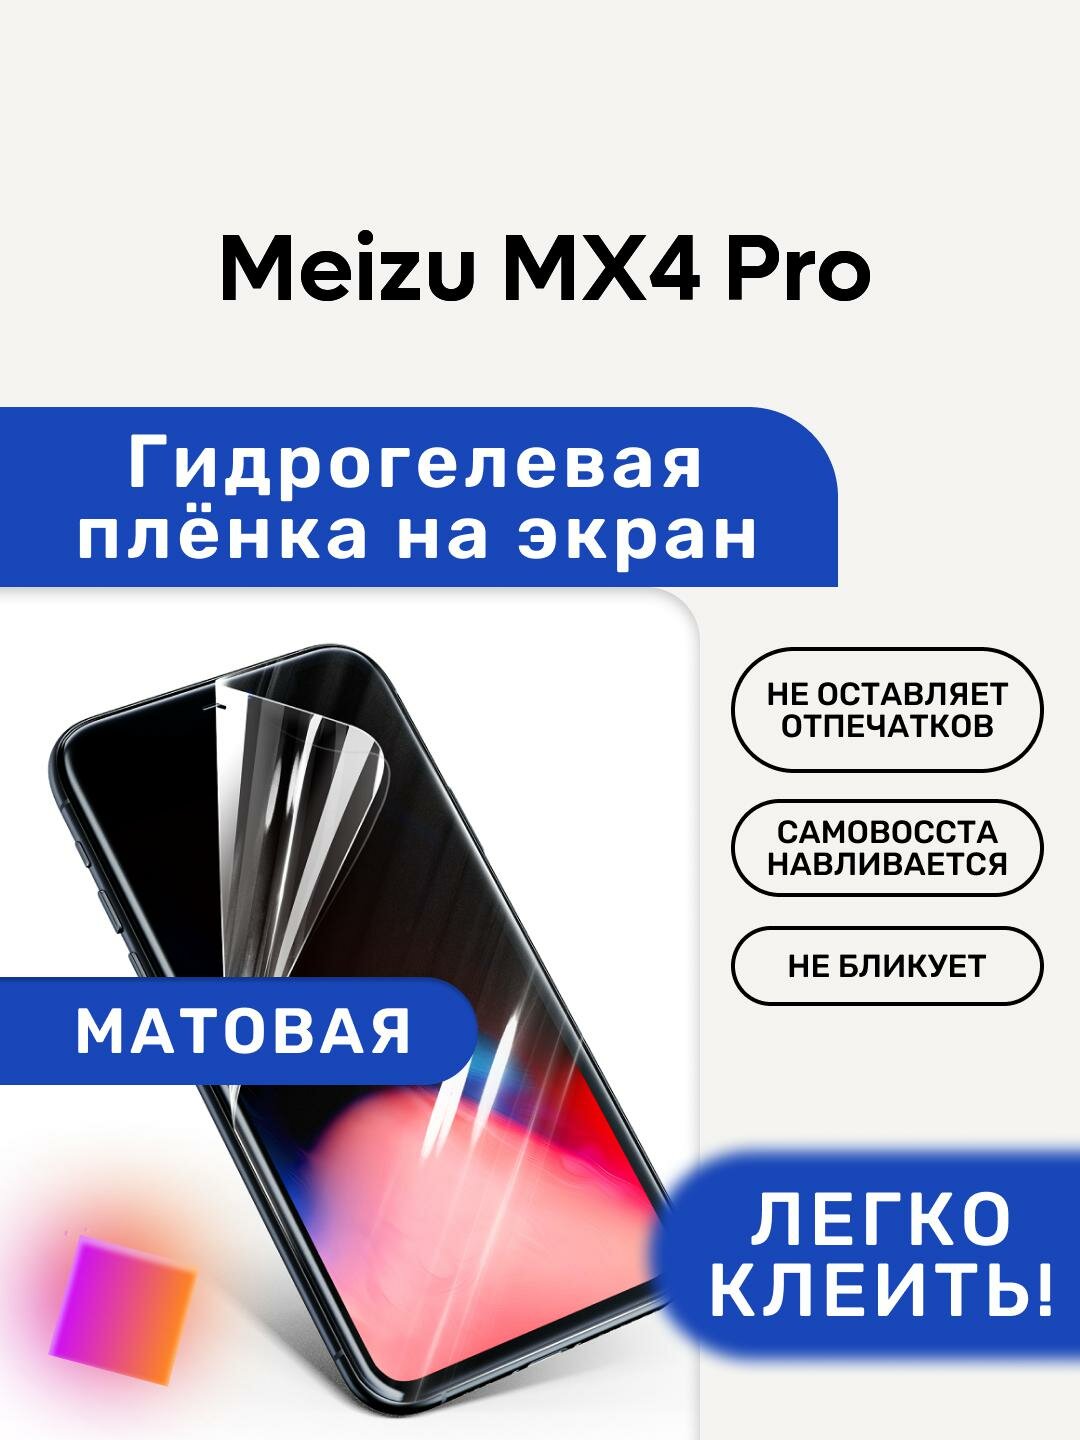 Матовая Гидрогелевая плёнка, полиуретановая, защита экрана Meizu MX4 Pro